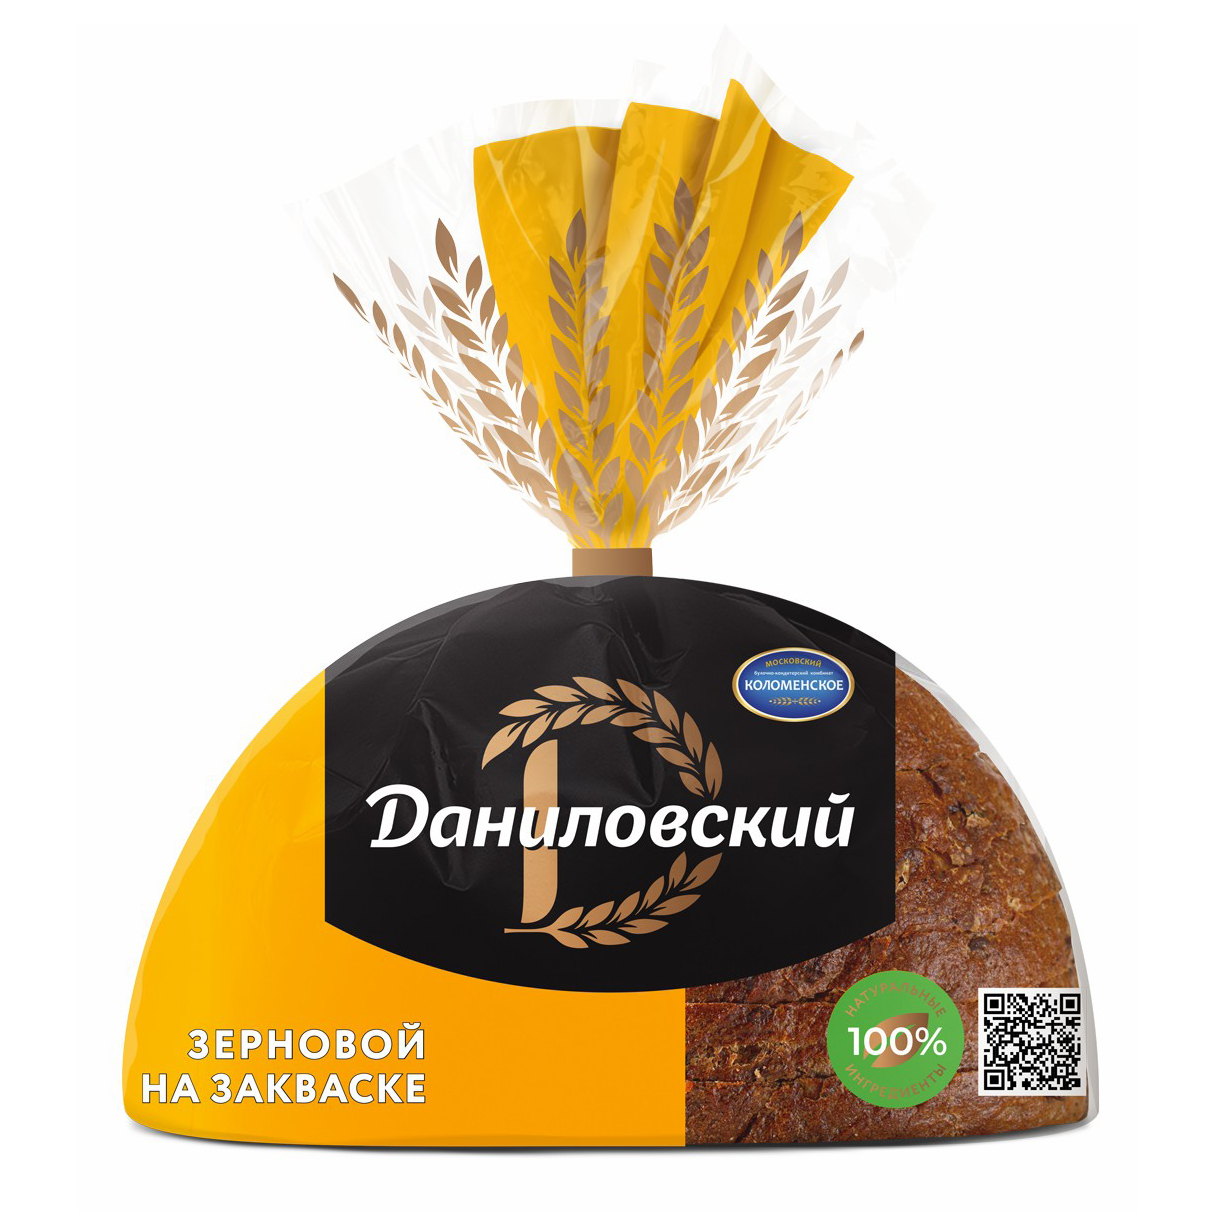 Хлеб серый Даниловский Зерновой 300 г